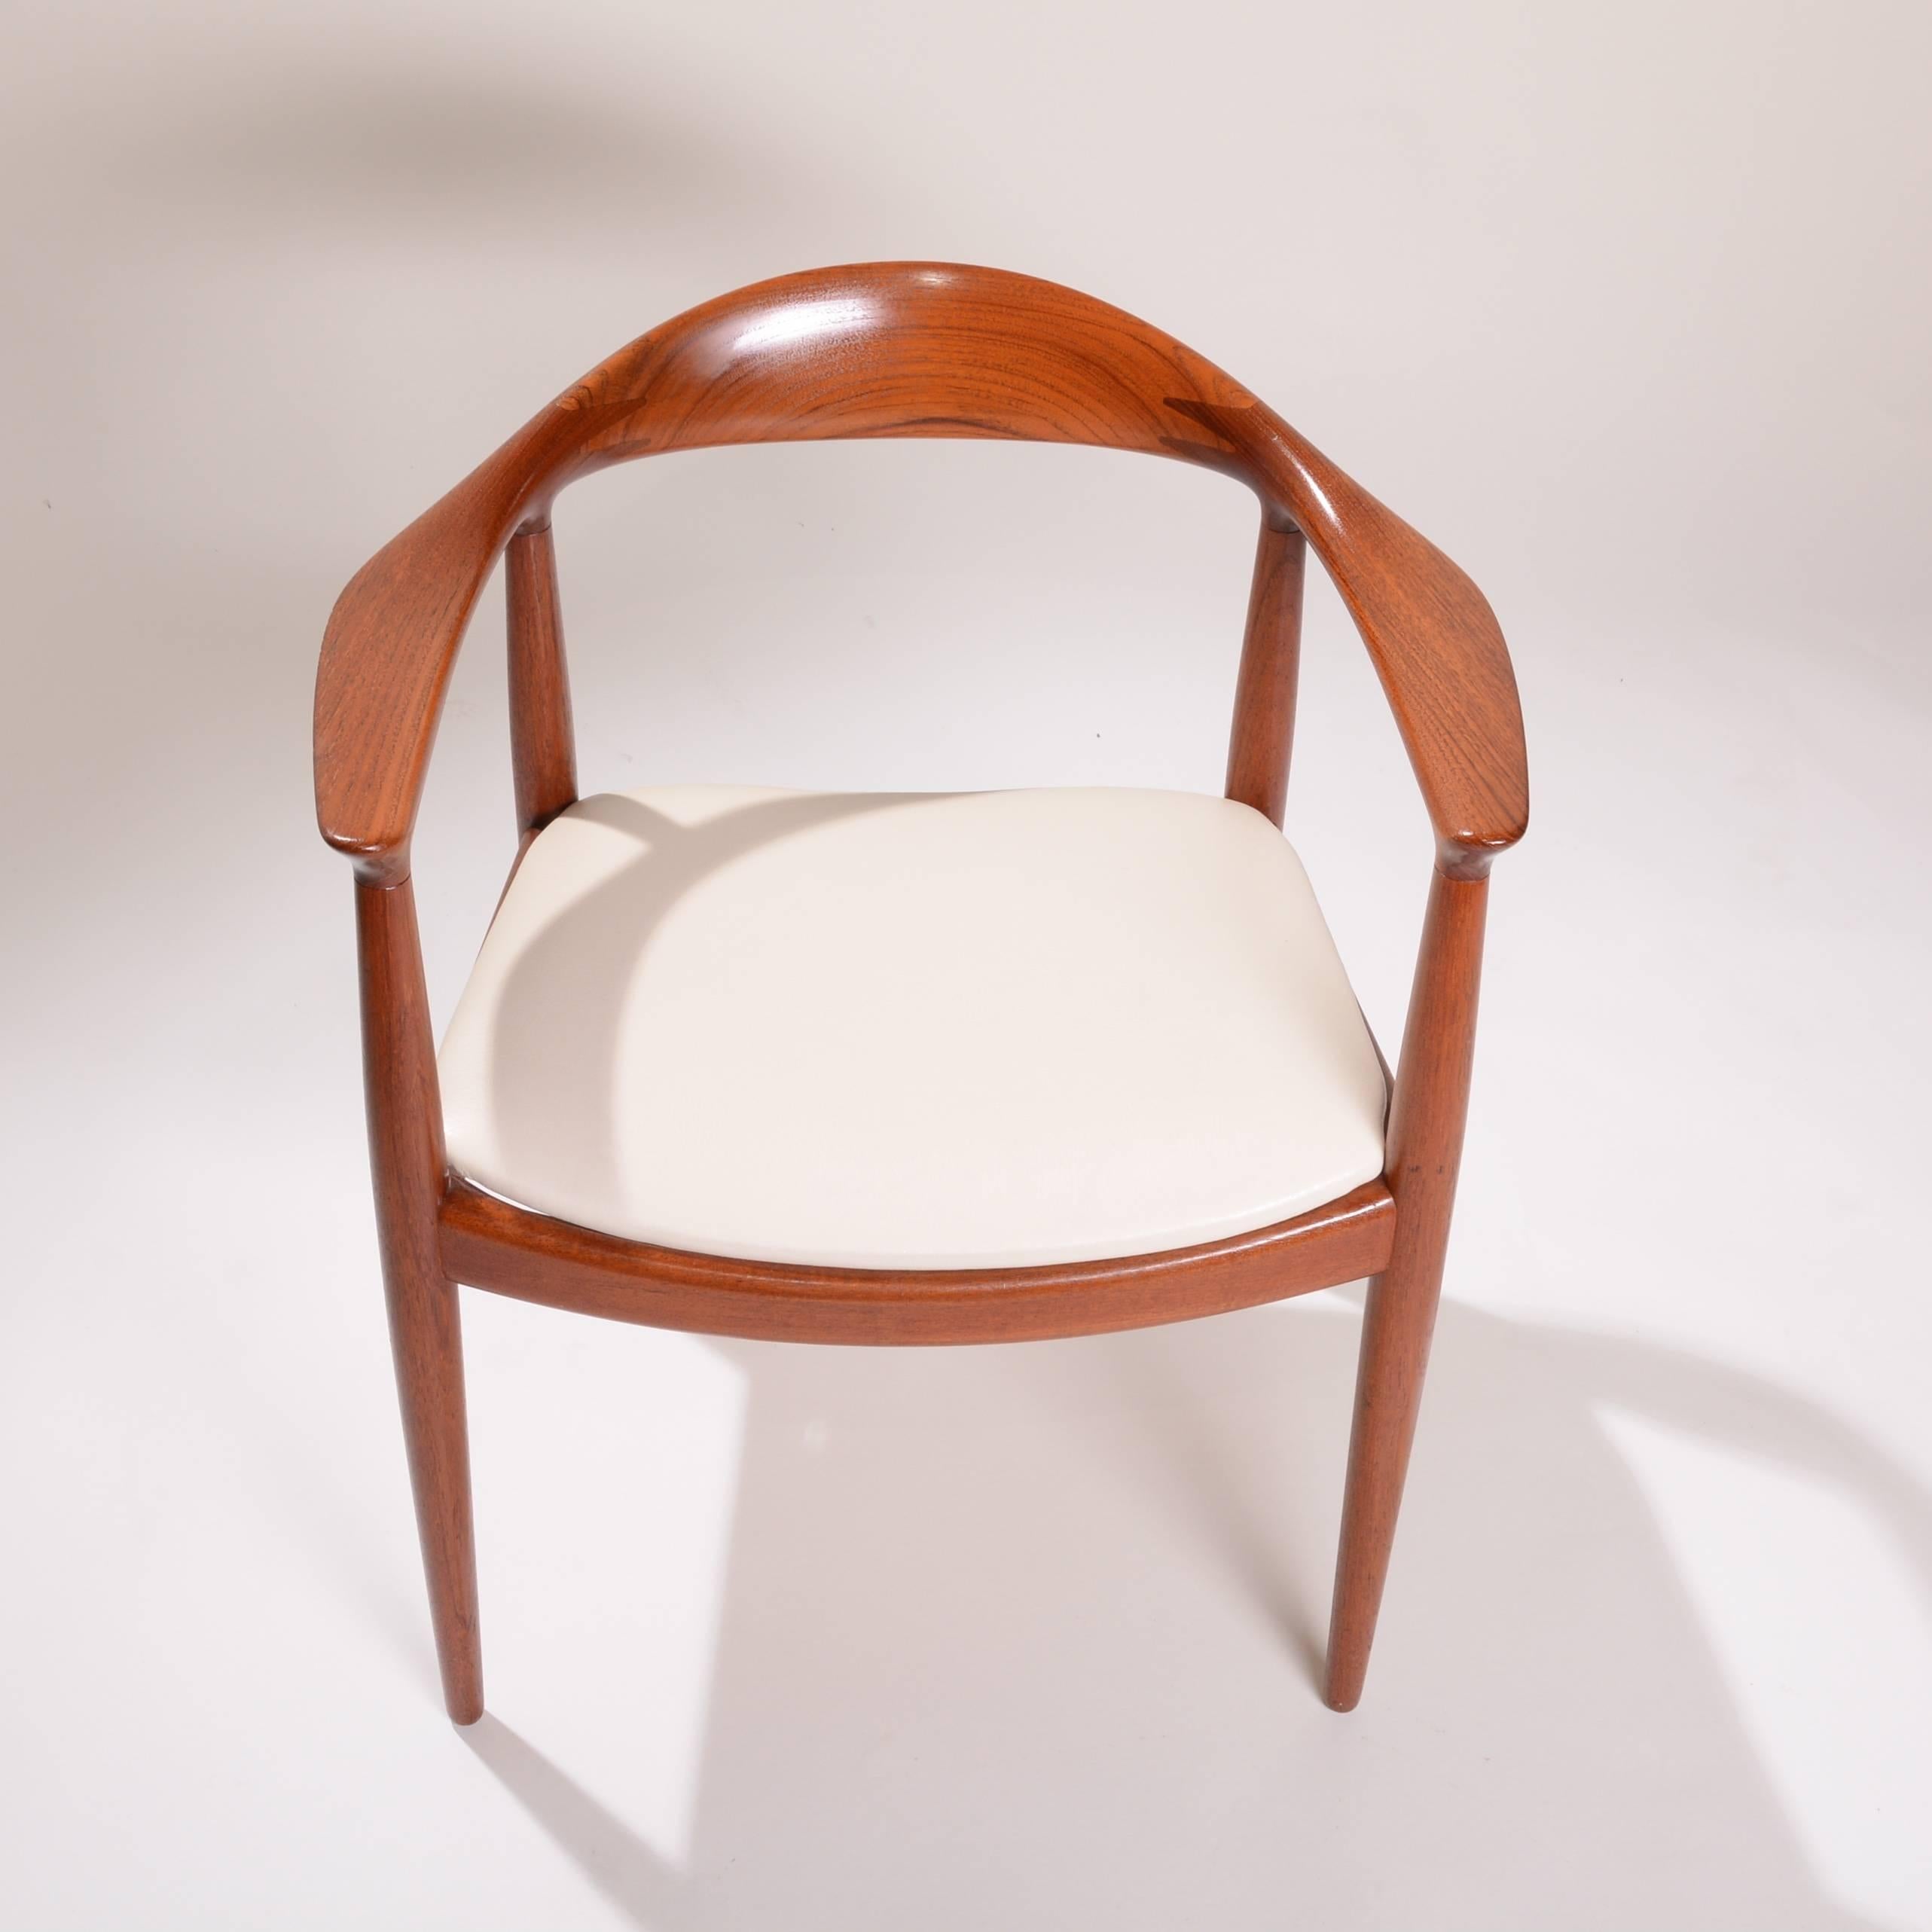 4 Early Hans Wegner for Johannes Hansen JH-503 Chairs in Teak For Sale 5